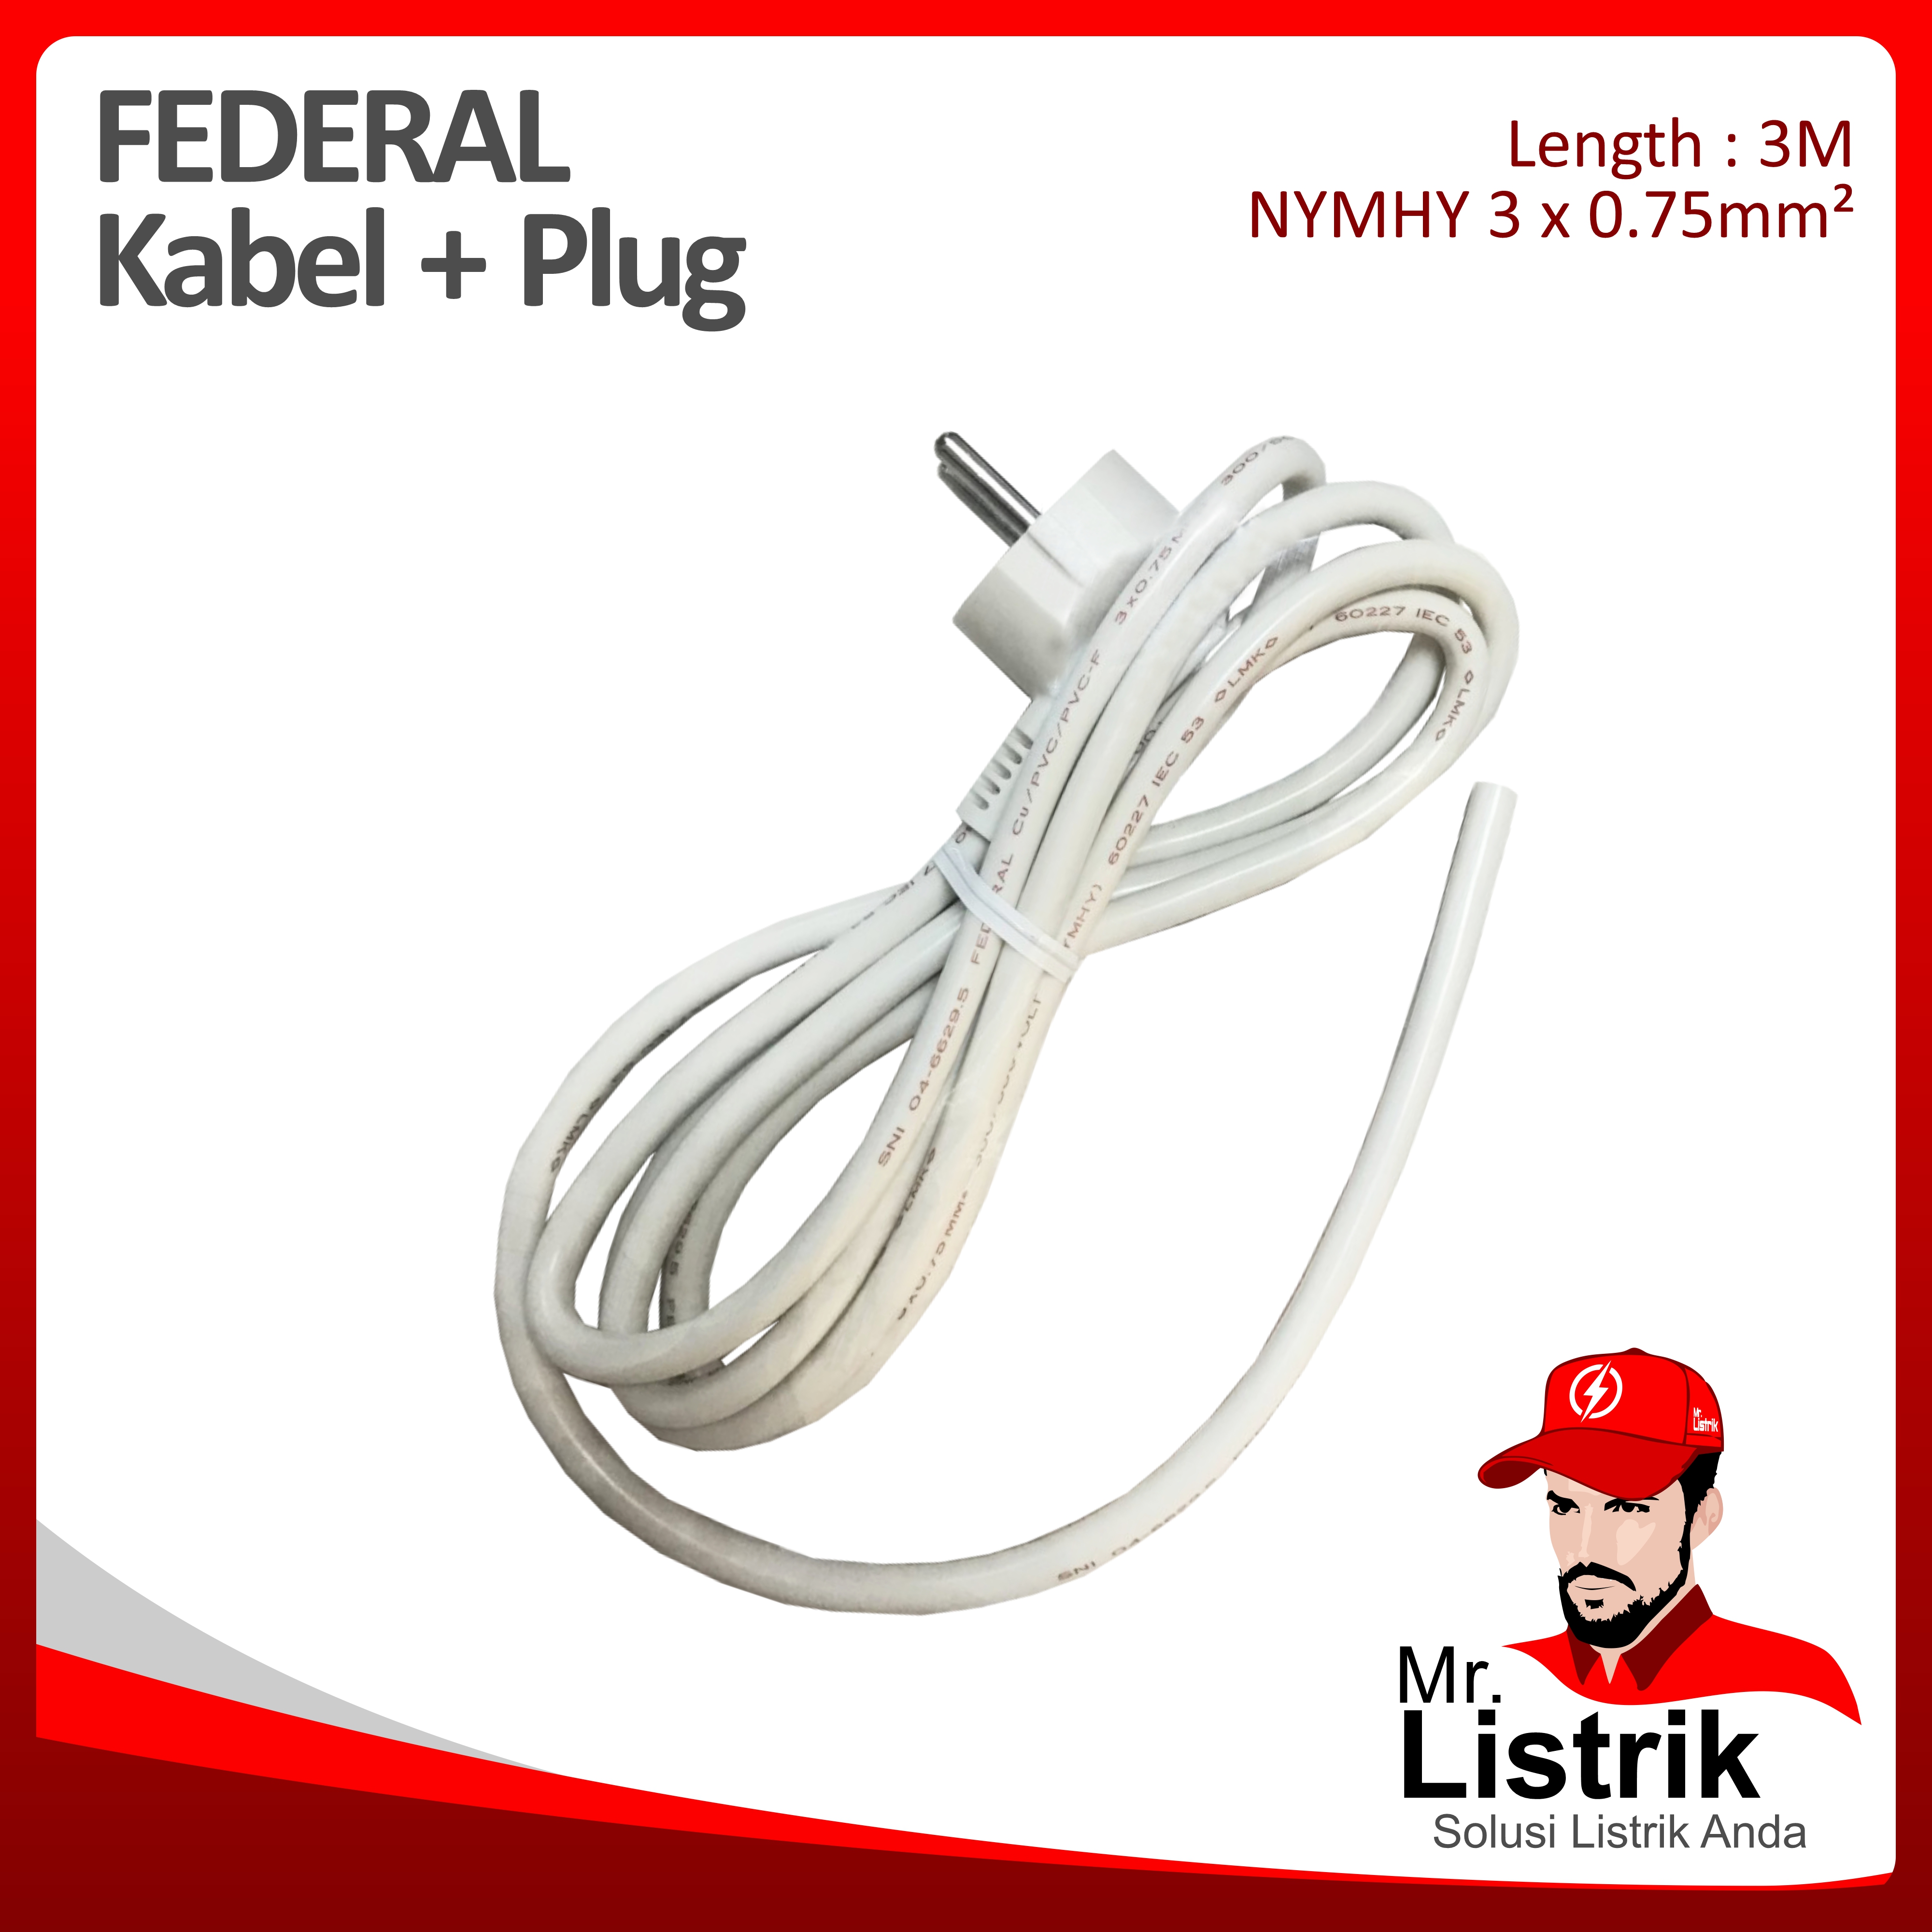 NYMHY 3 x 0.75mm² 3M + Plug Federal 